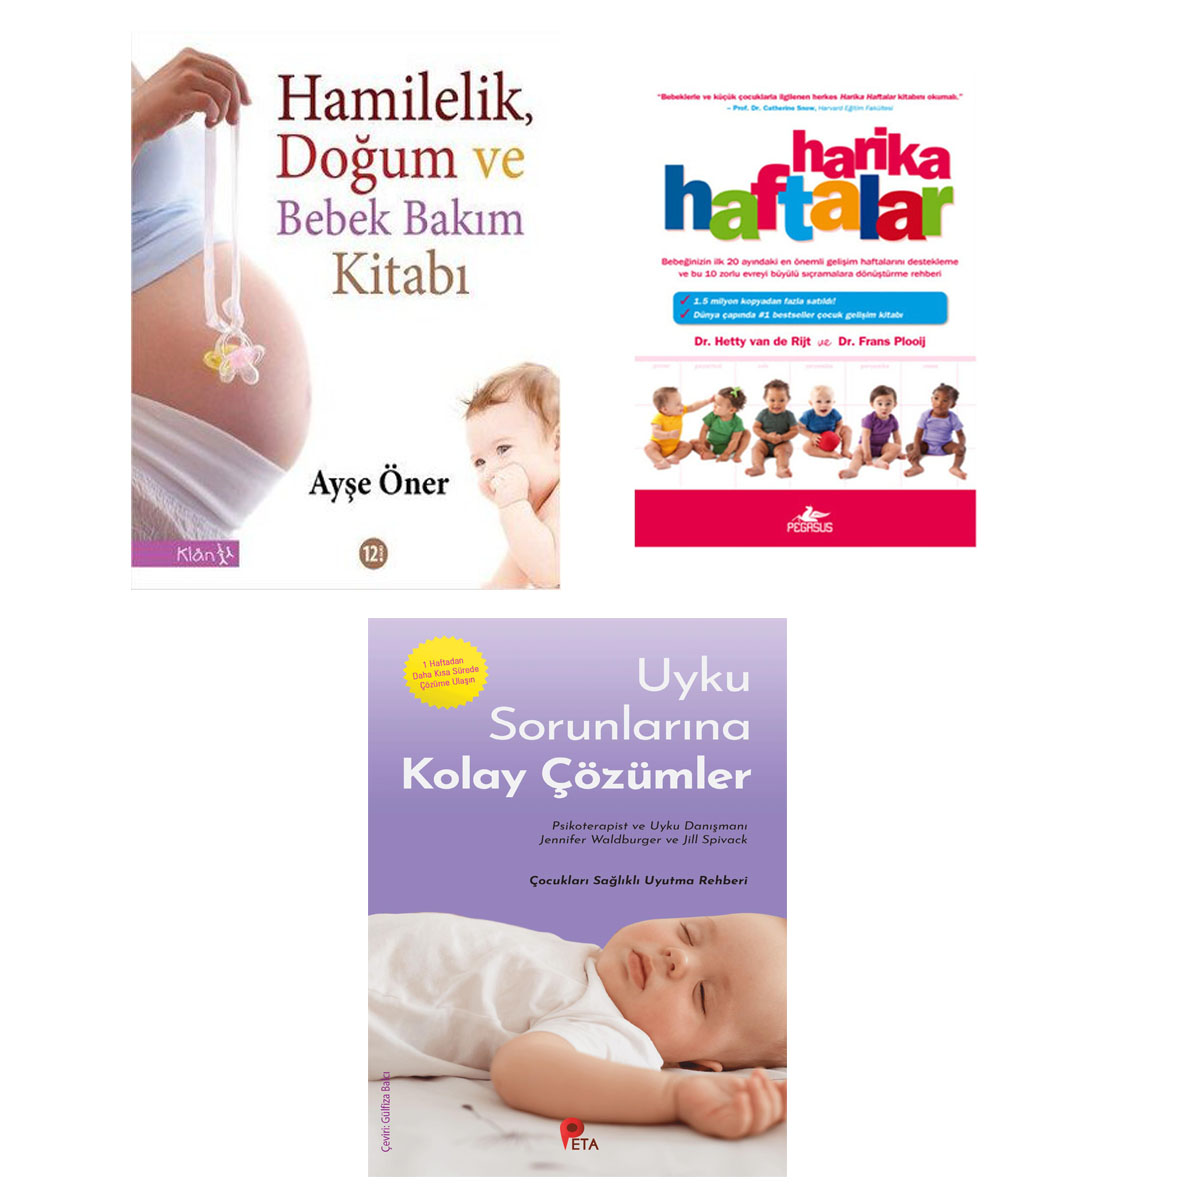 Hamilelik, Doğum ve Bebek Bakım Kitabı - Harika Haftalar - Uyku Sorunlarına Kolay Çözümler (Bebek Bakımı Seti - 3 Kitap)